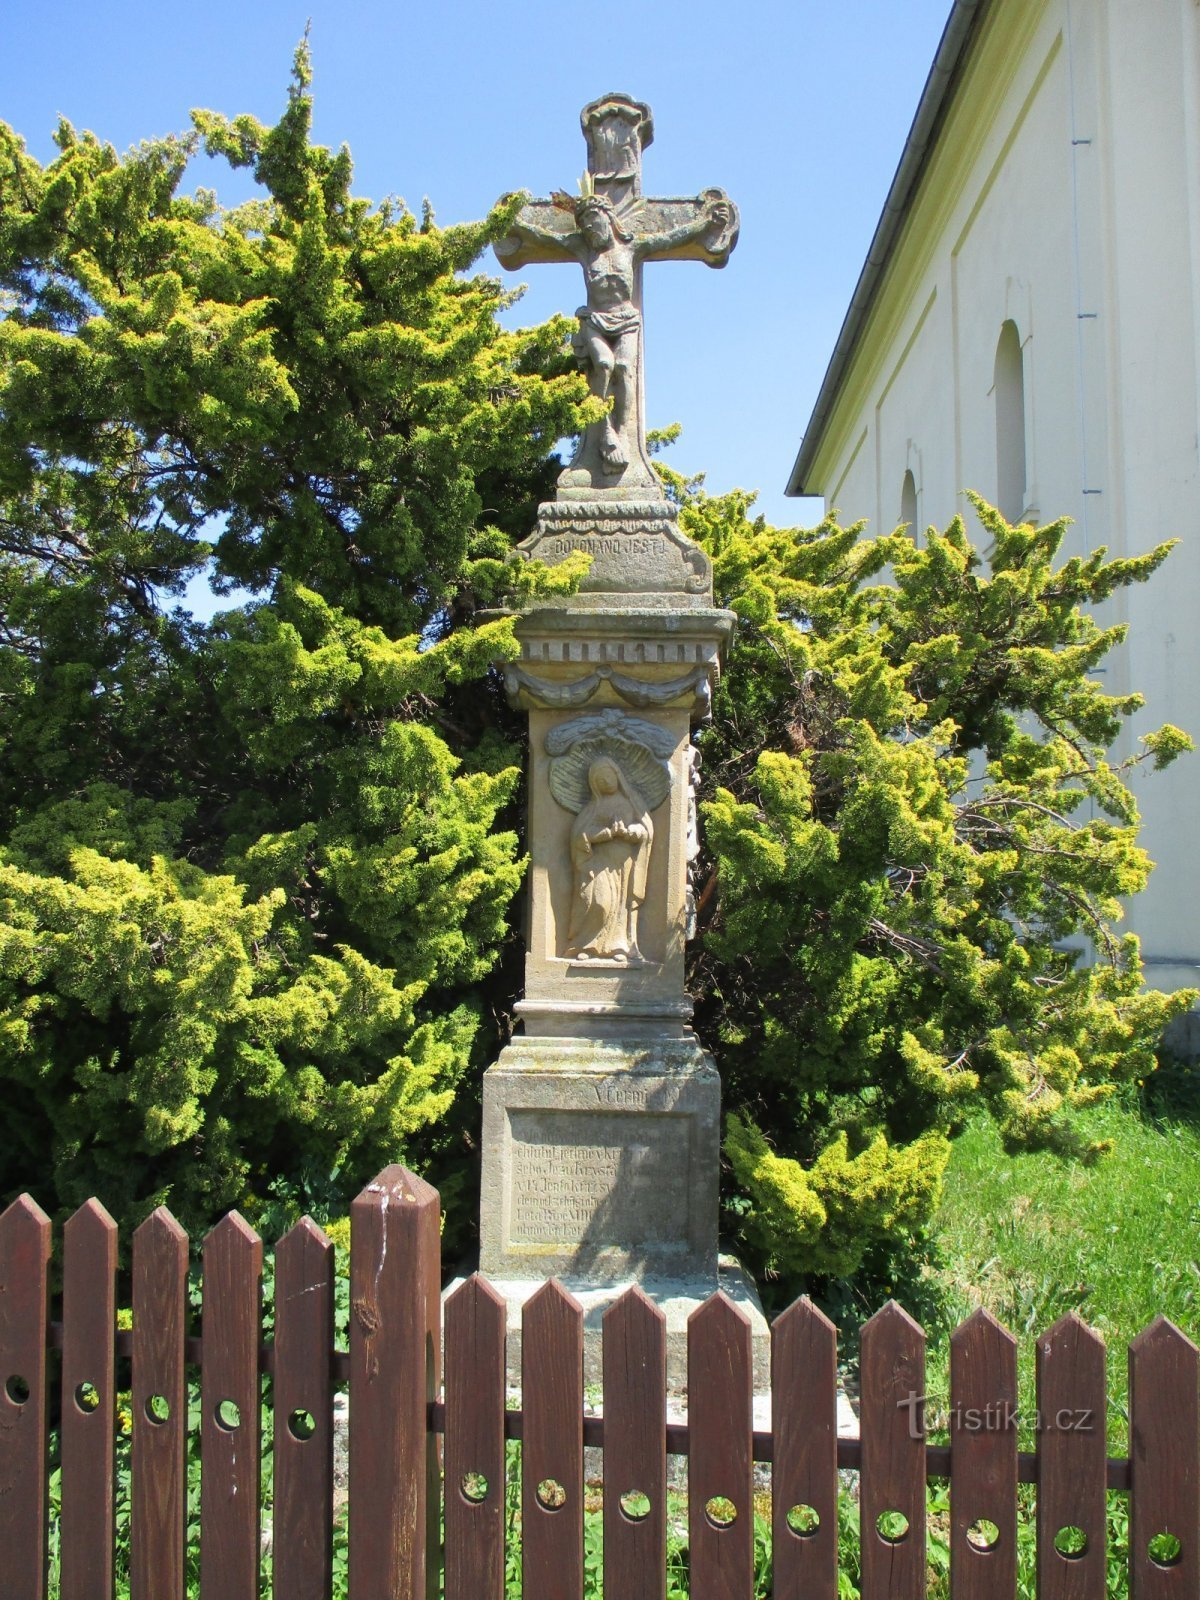 Thánh giá tại nhà thờ (Výrava, 18.5.2020)